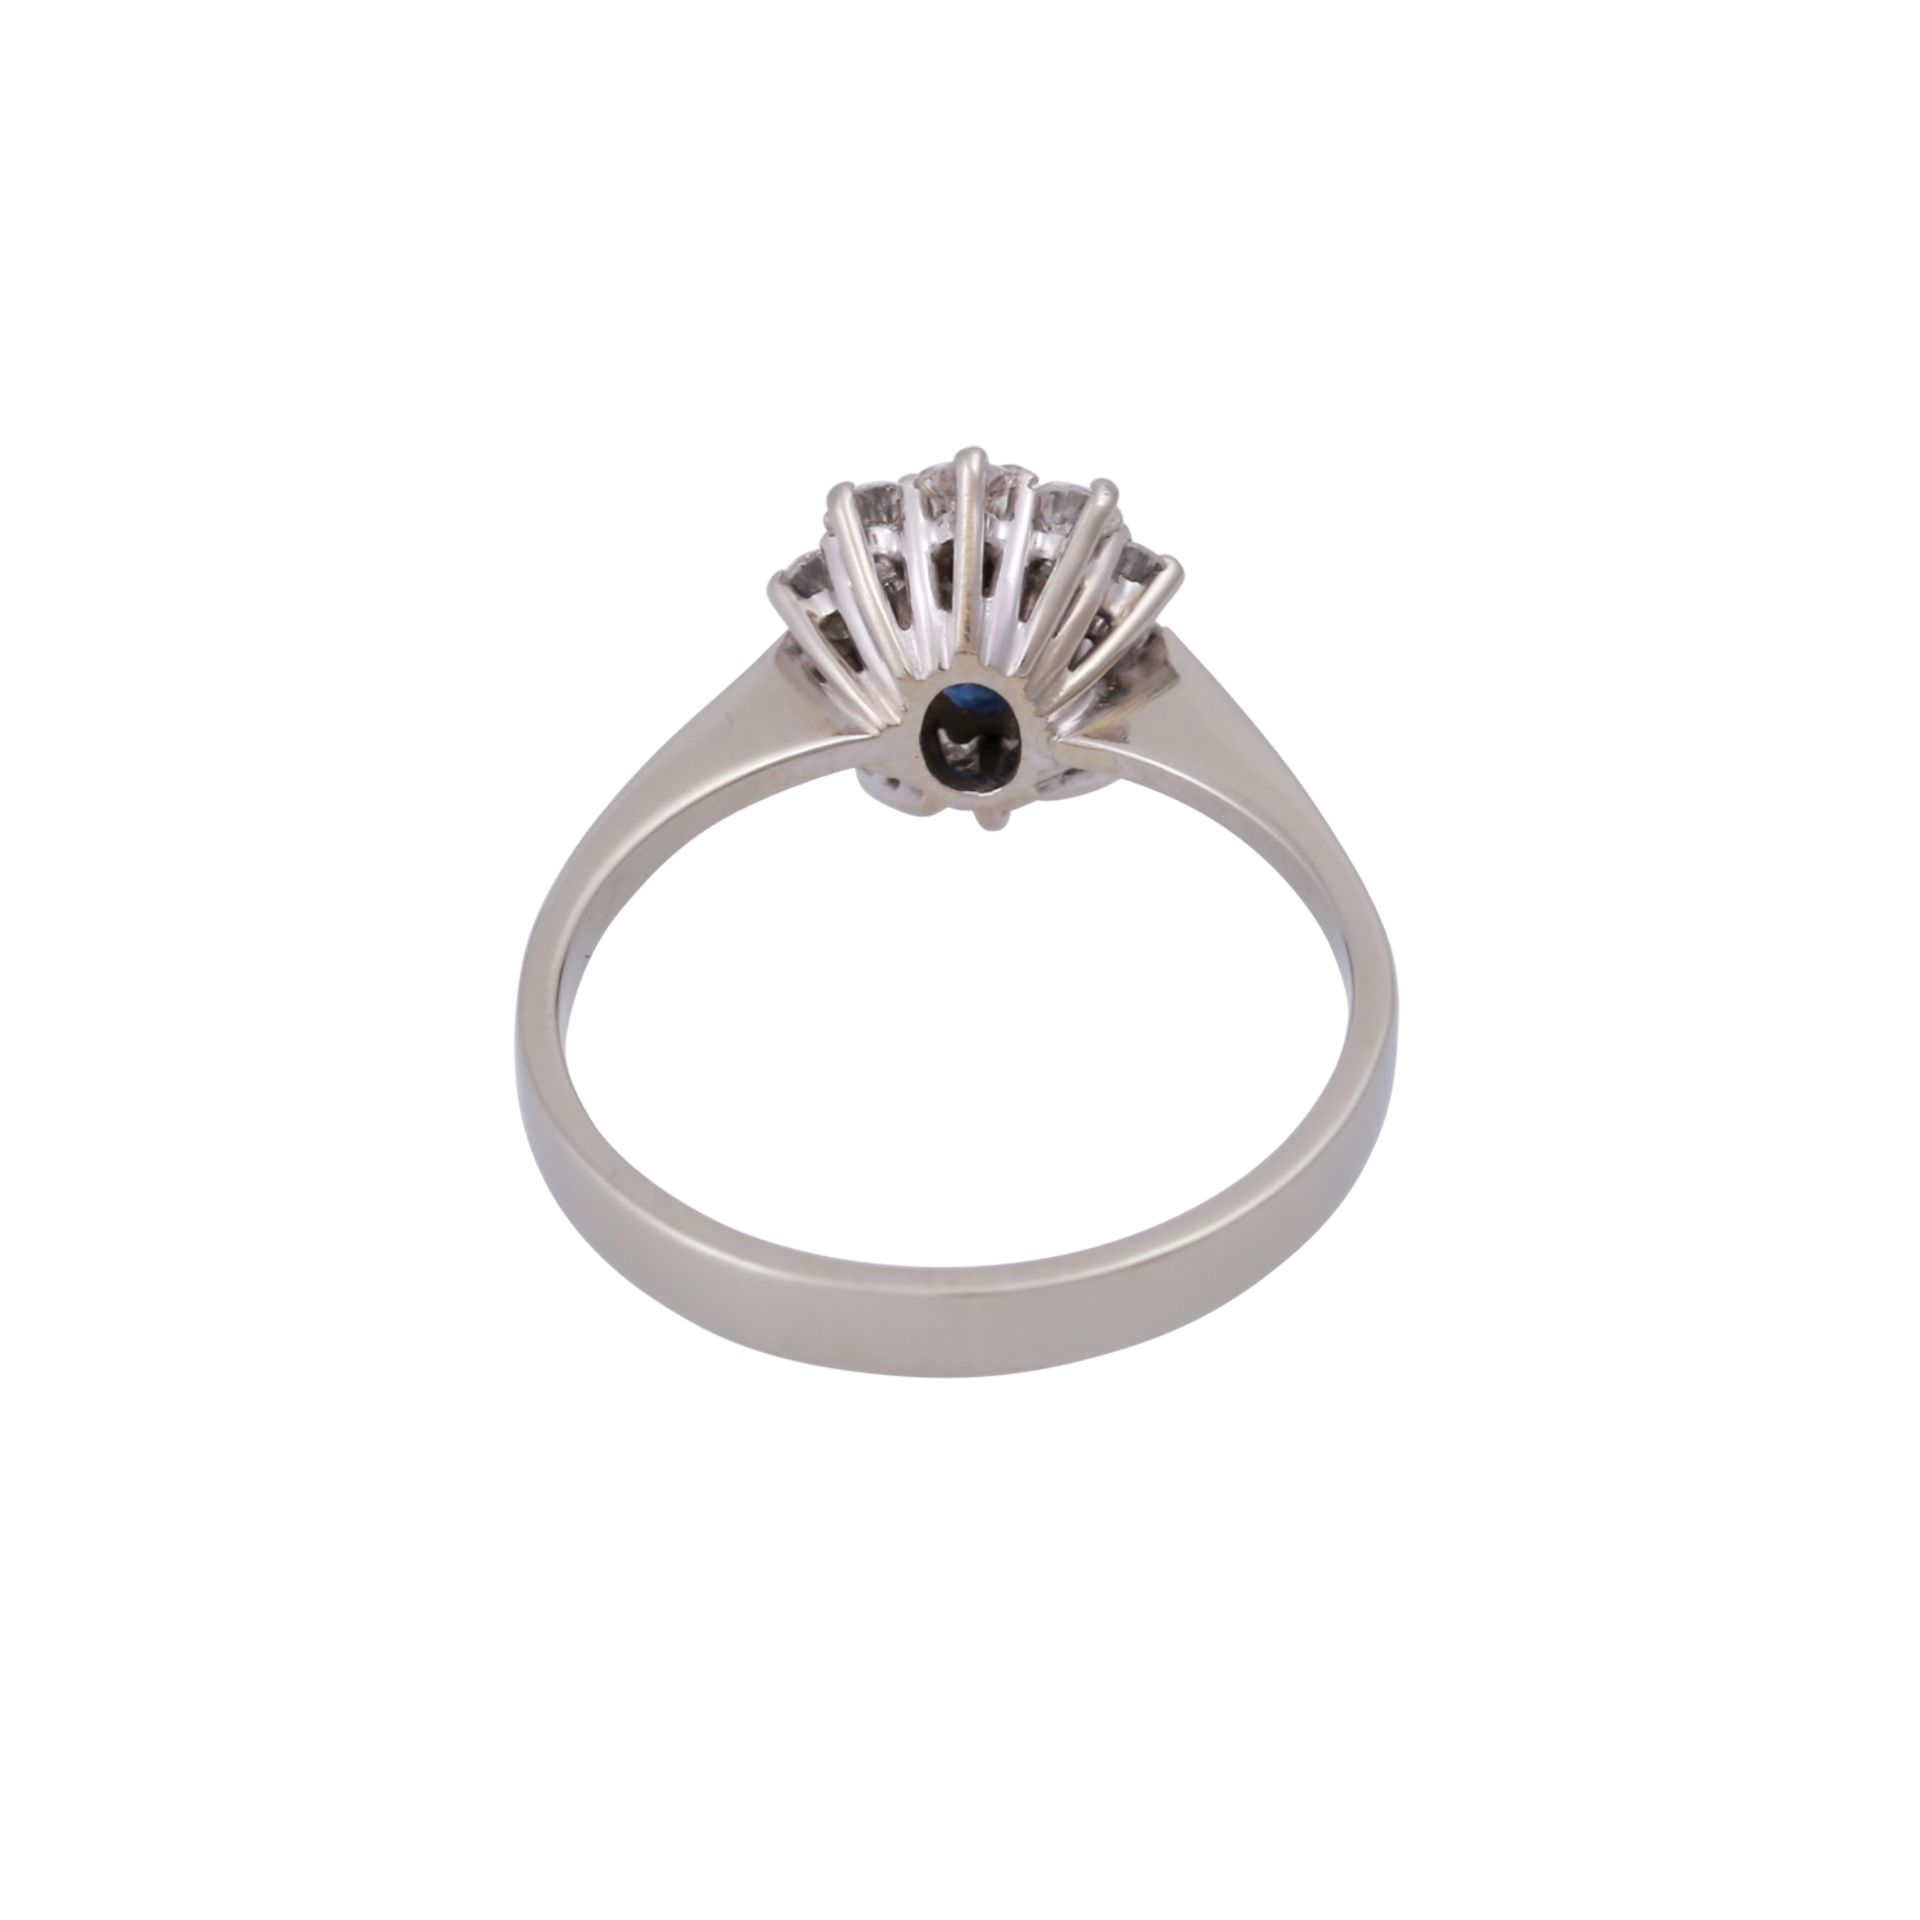 Ring mit Saphir und Brillantenvon zus. ca. 0,4 ct, gute Farbe u. Reinheit, Saphir ca. 1 ct, WG - Bild 4 aus 4